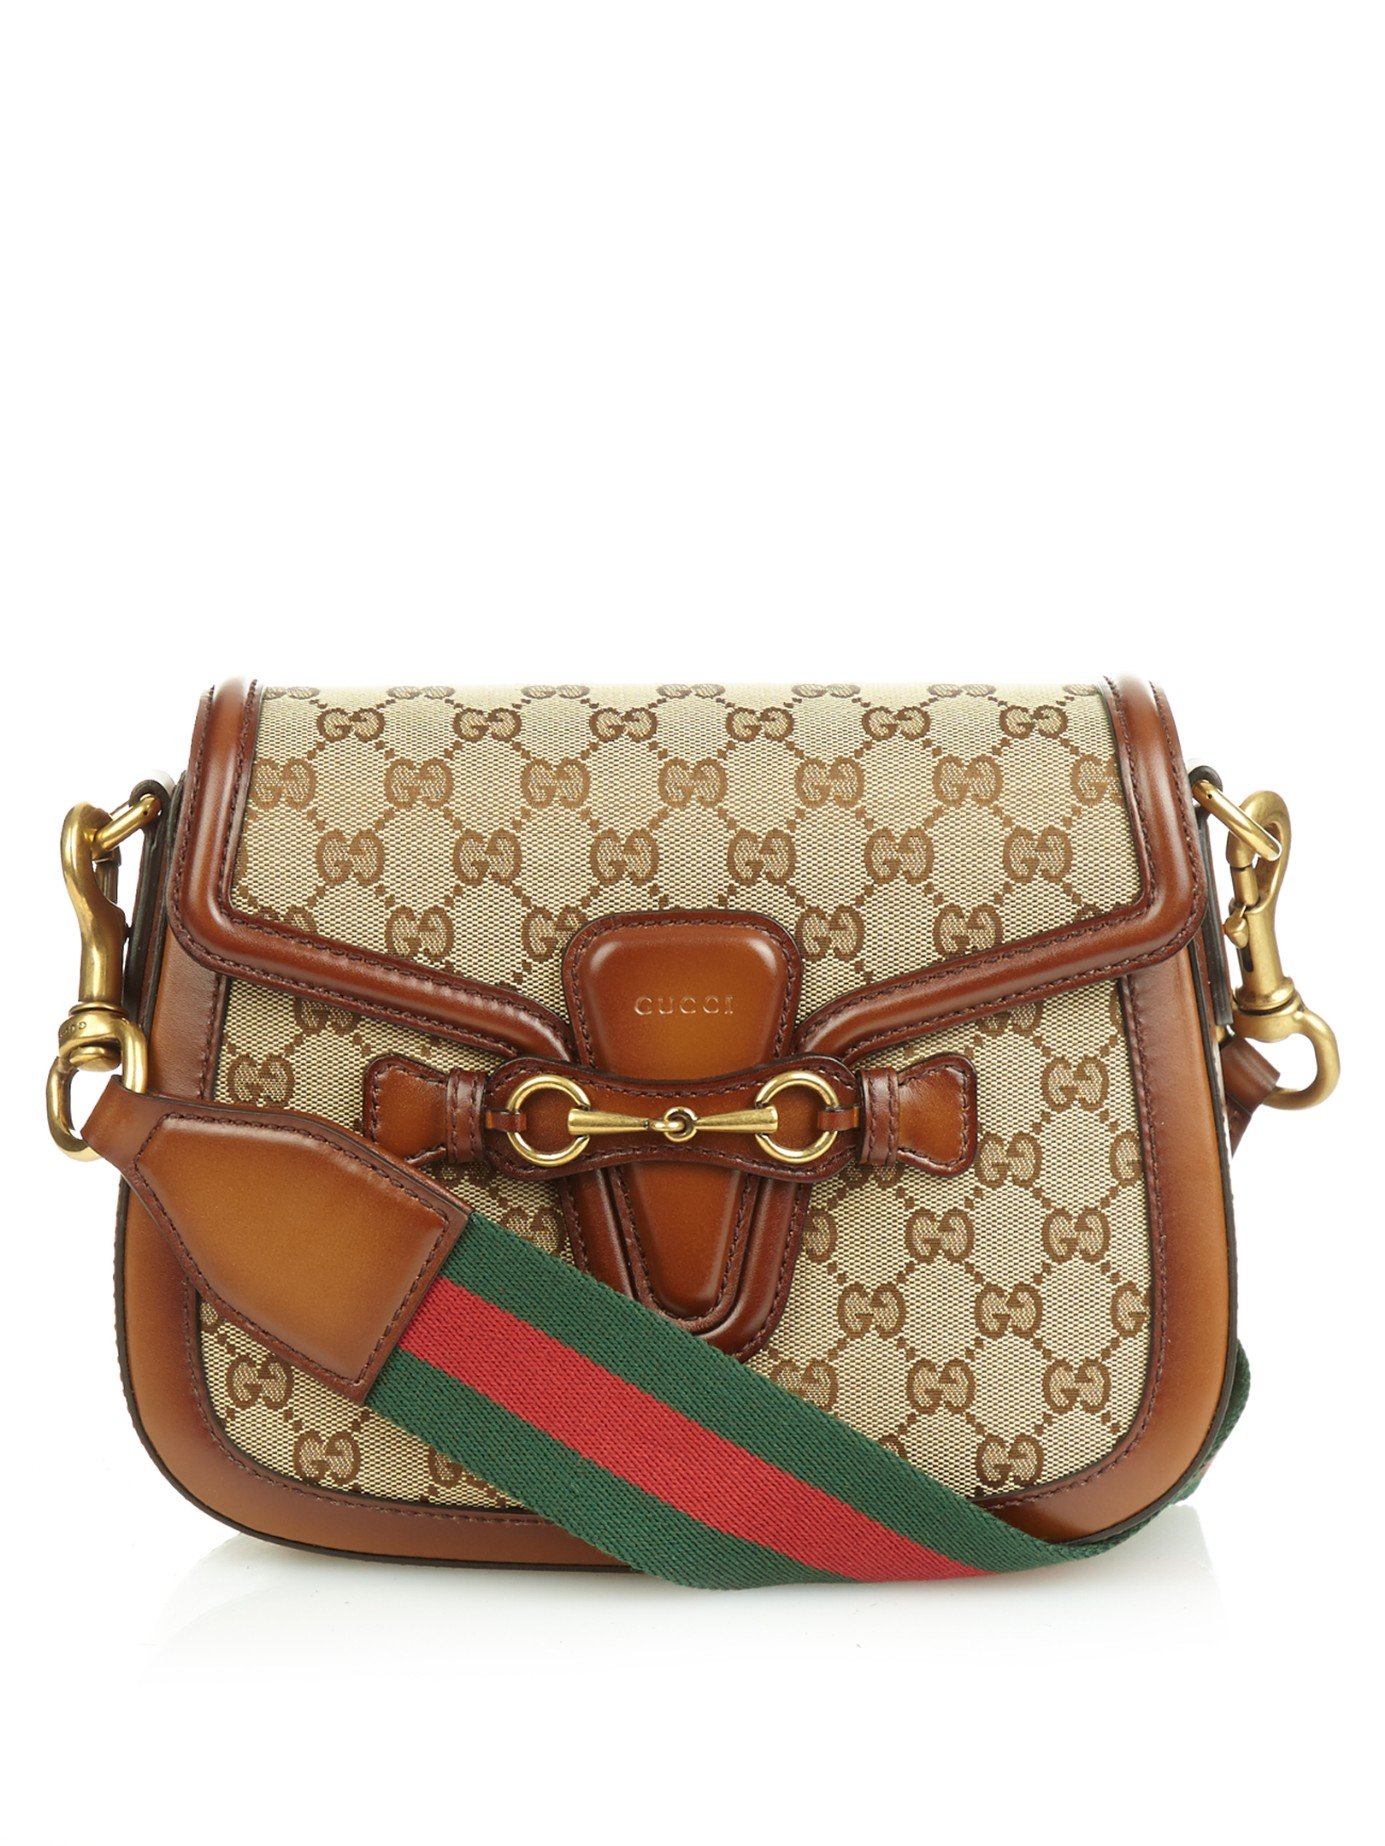 Lyst - Gucci Lady Web Medium Shoulder Bag in Brown